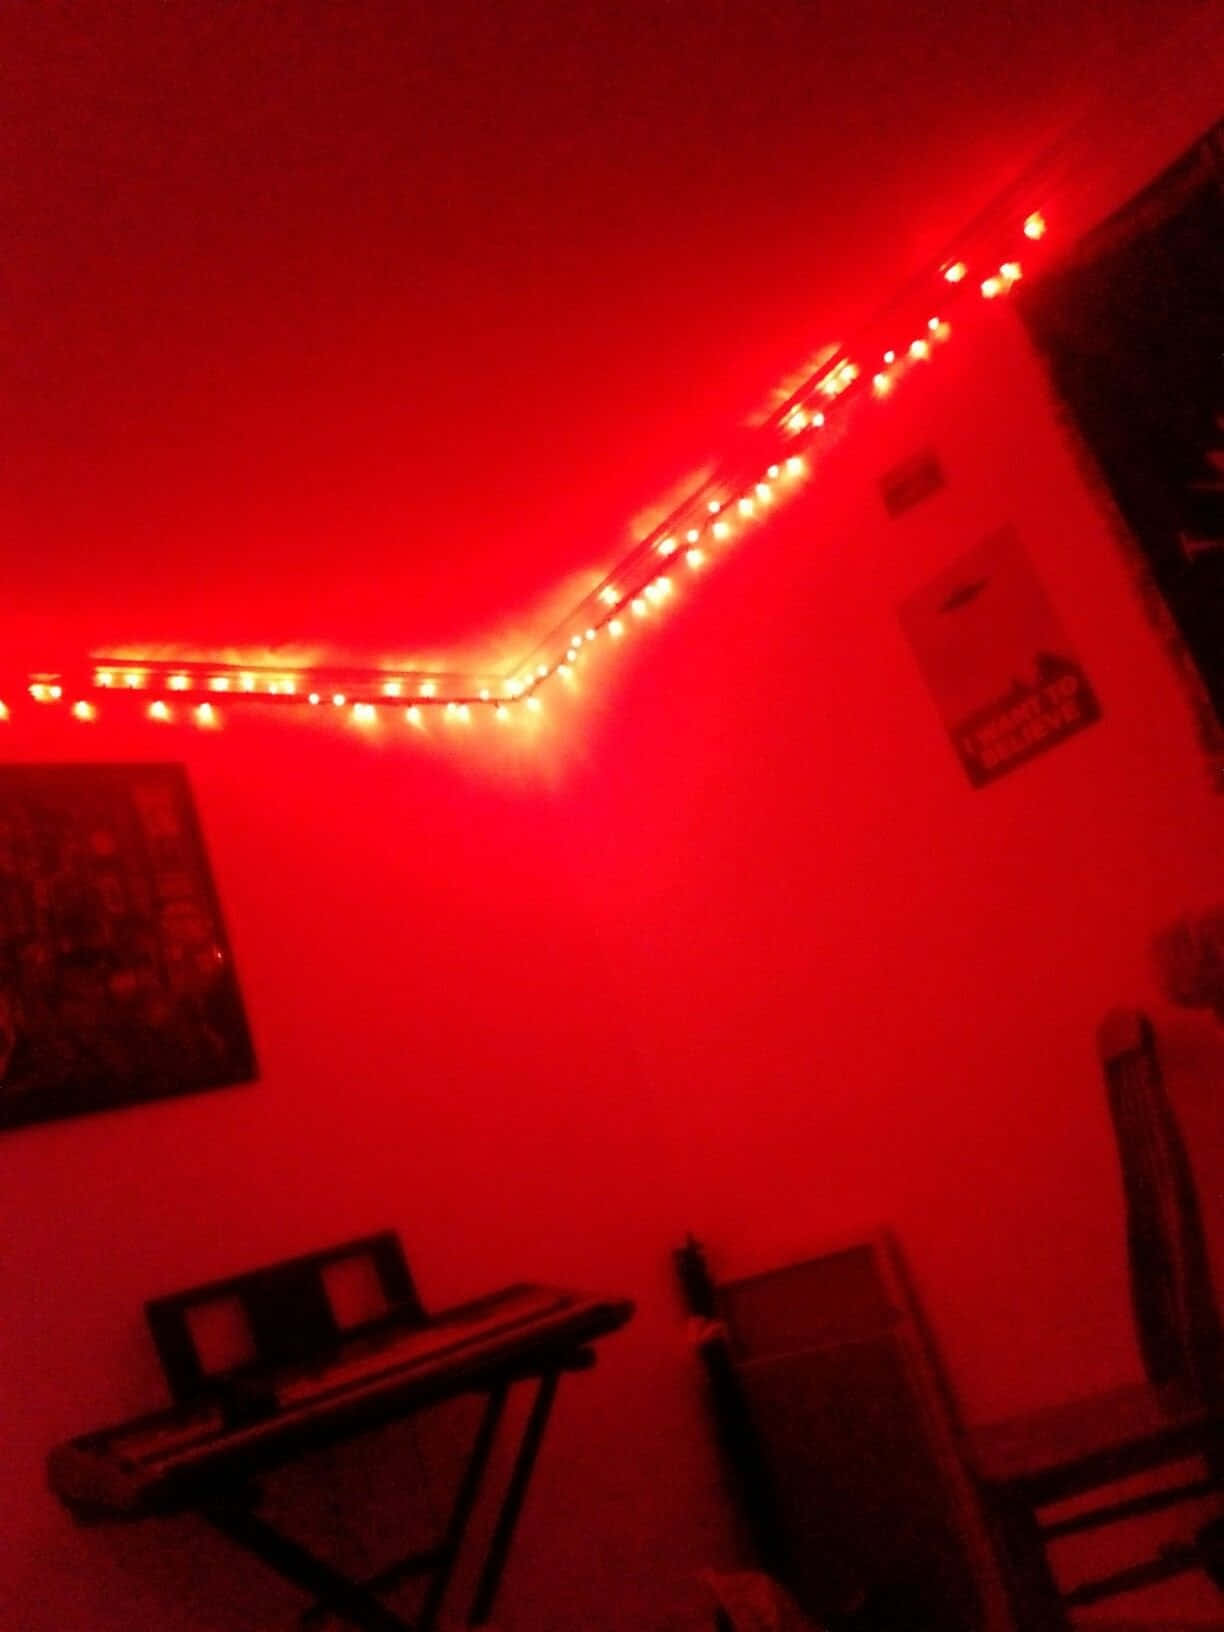 Red Glow Room Aesthetic.jpg Wallpaper